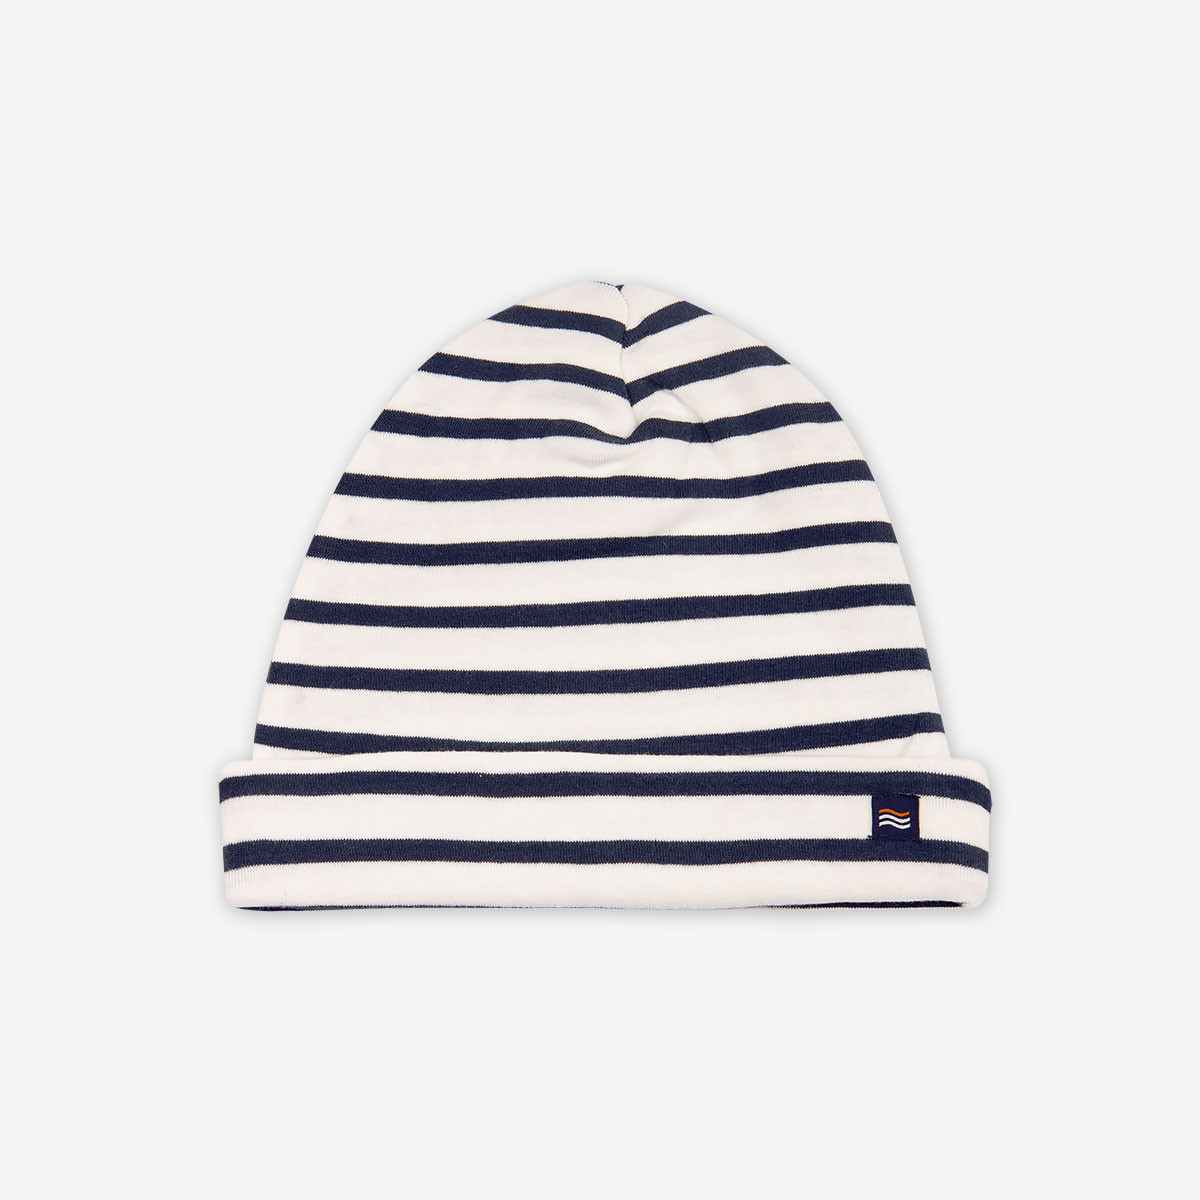 73 idées de Bonnet / chapeau tricot